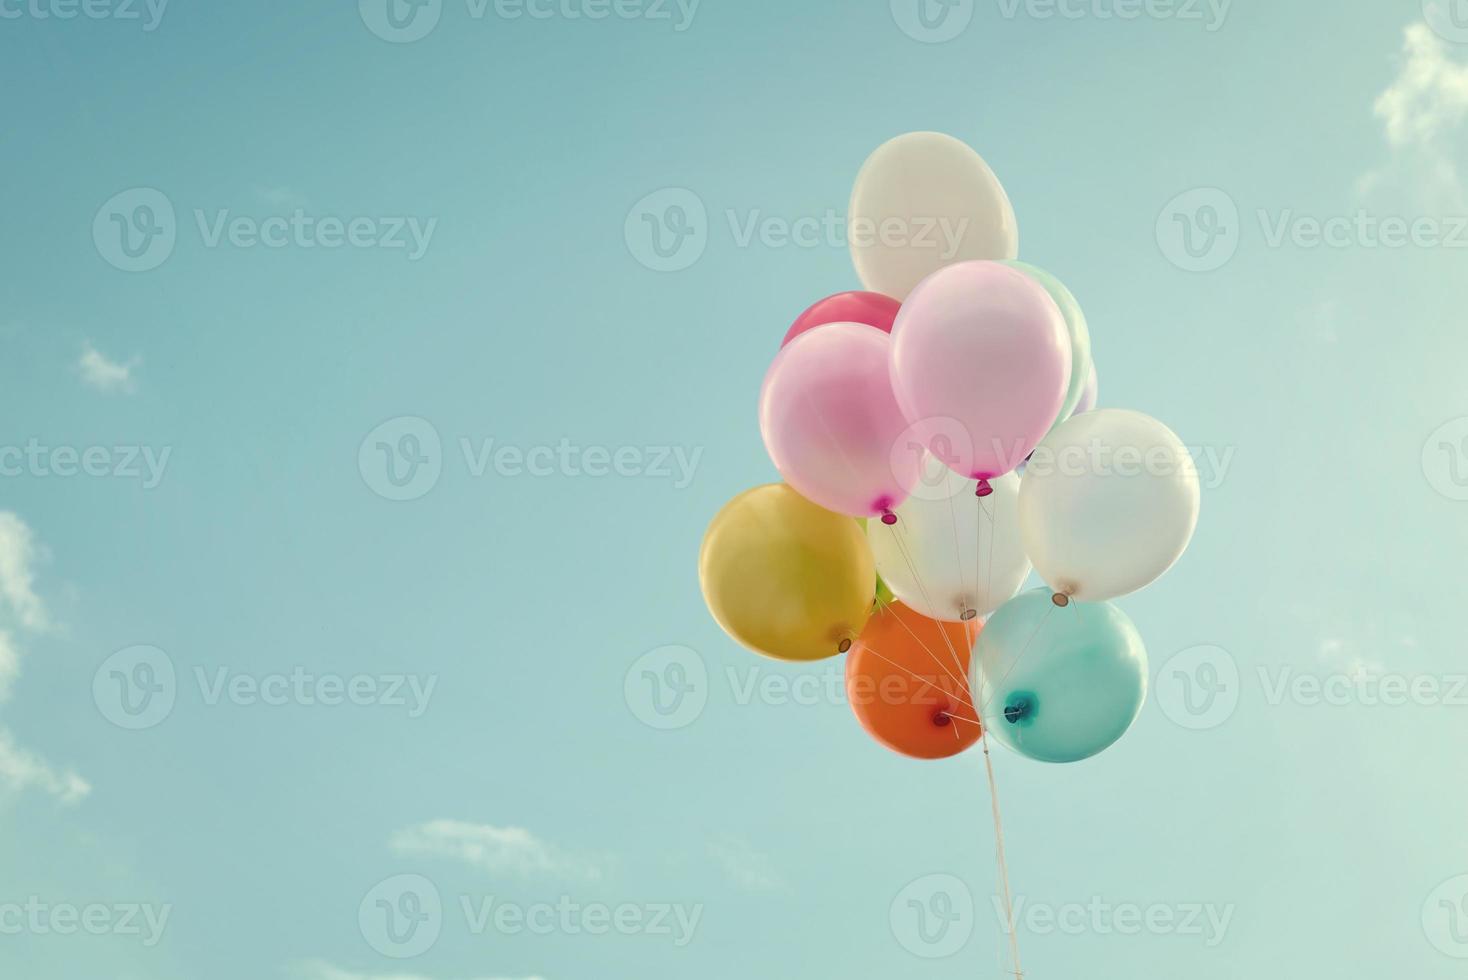 Bündel Luftballons, die im strahlend blauen Himmel schweben foto